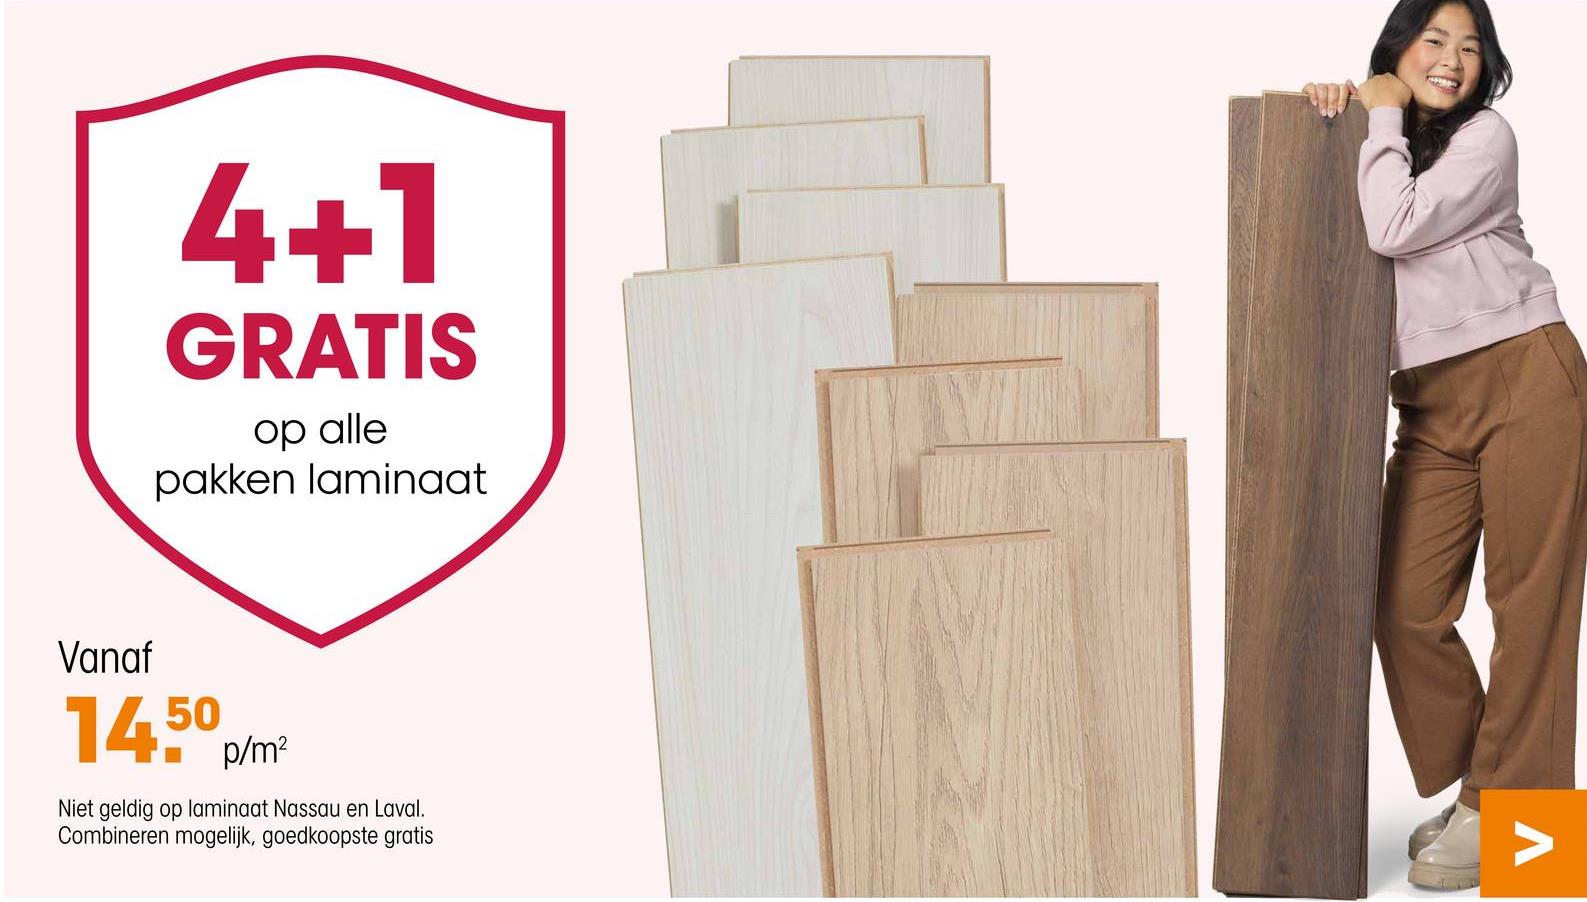 4+1
GRATIS
op alle
pakken laminaat
Vanaf
14.50 p/m²
Niet geldig op laminaat Nassau en Laval.
Combineren mogelijk, goedkoopste gratis